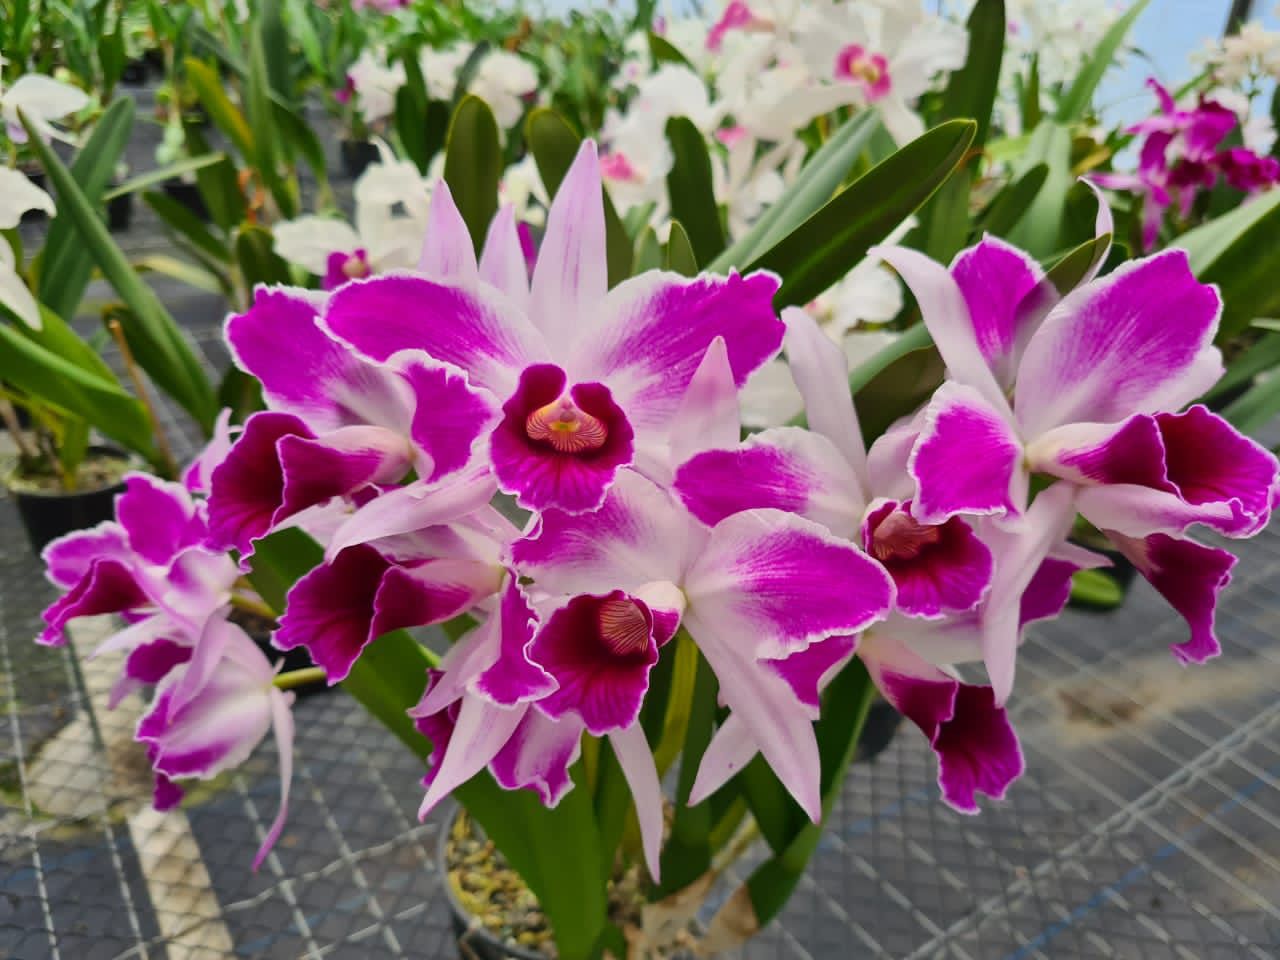 2ª Exposição de Orquídeas de Urussanga acontece em dezembro